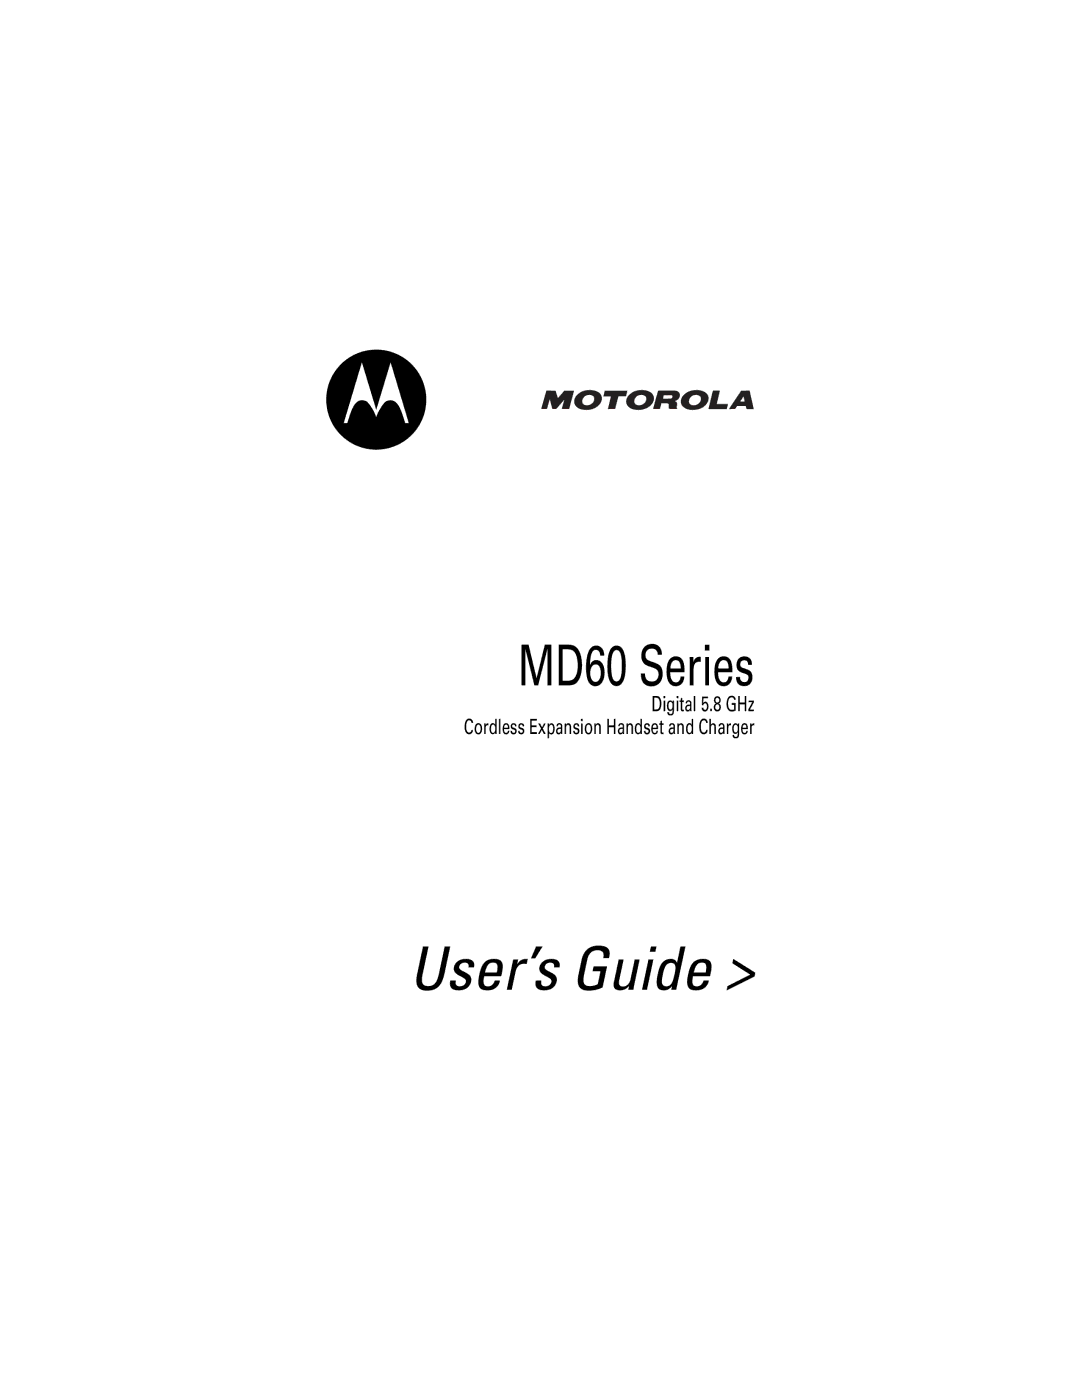 Motorola MD60 Series manual User’s Guide 